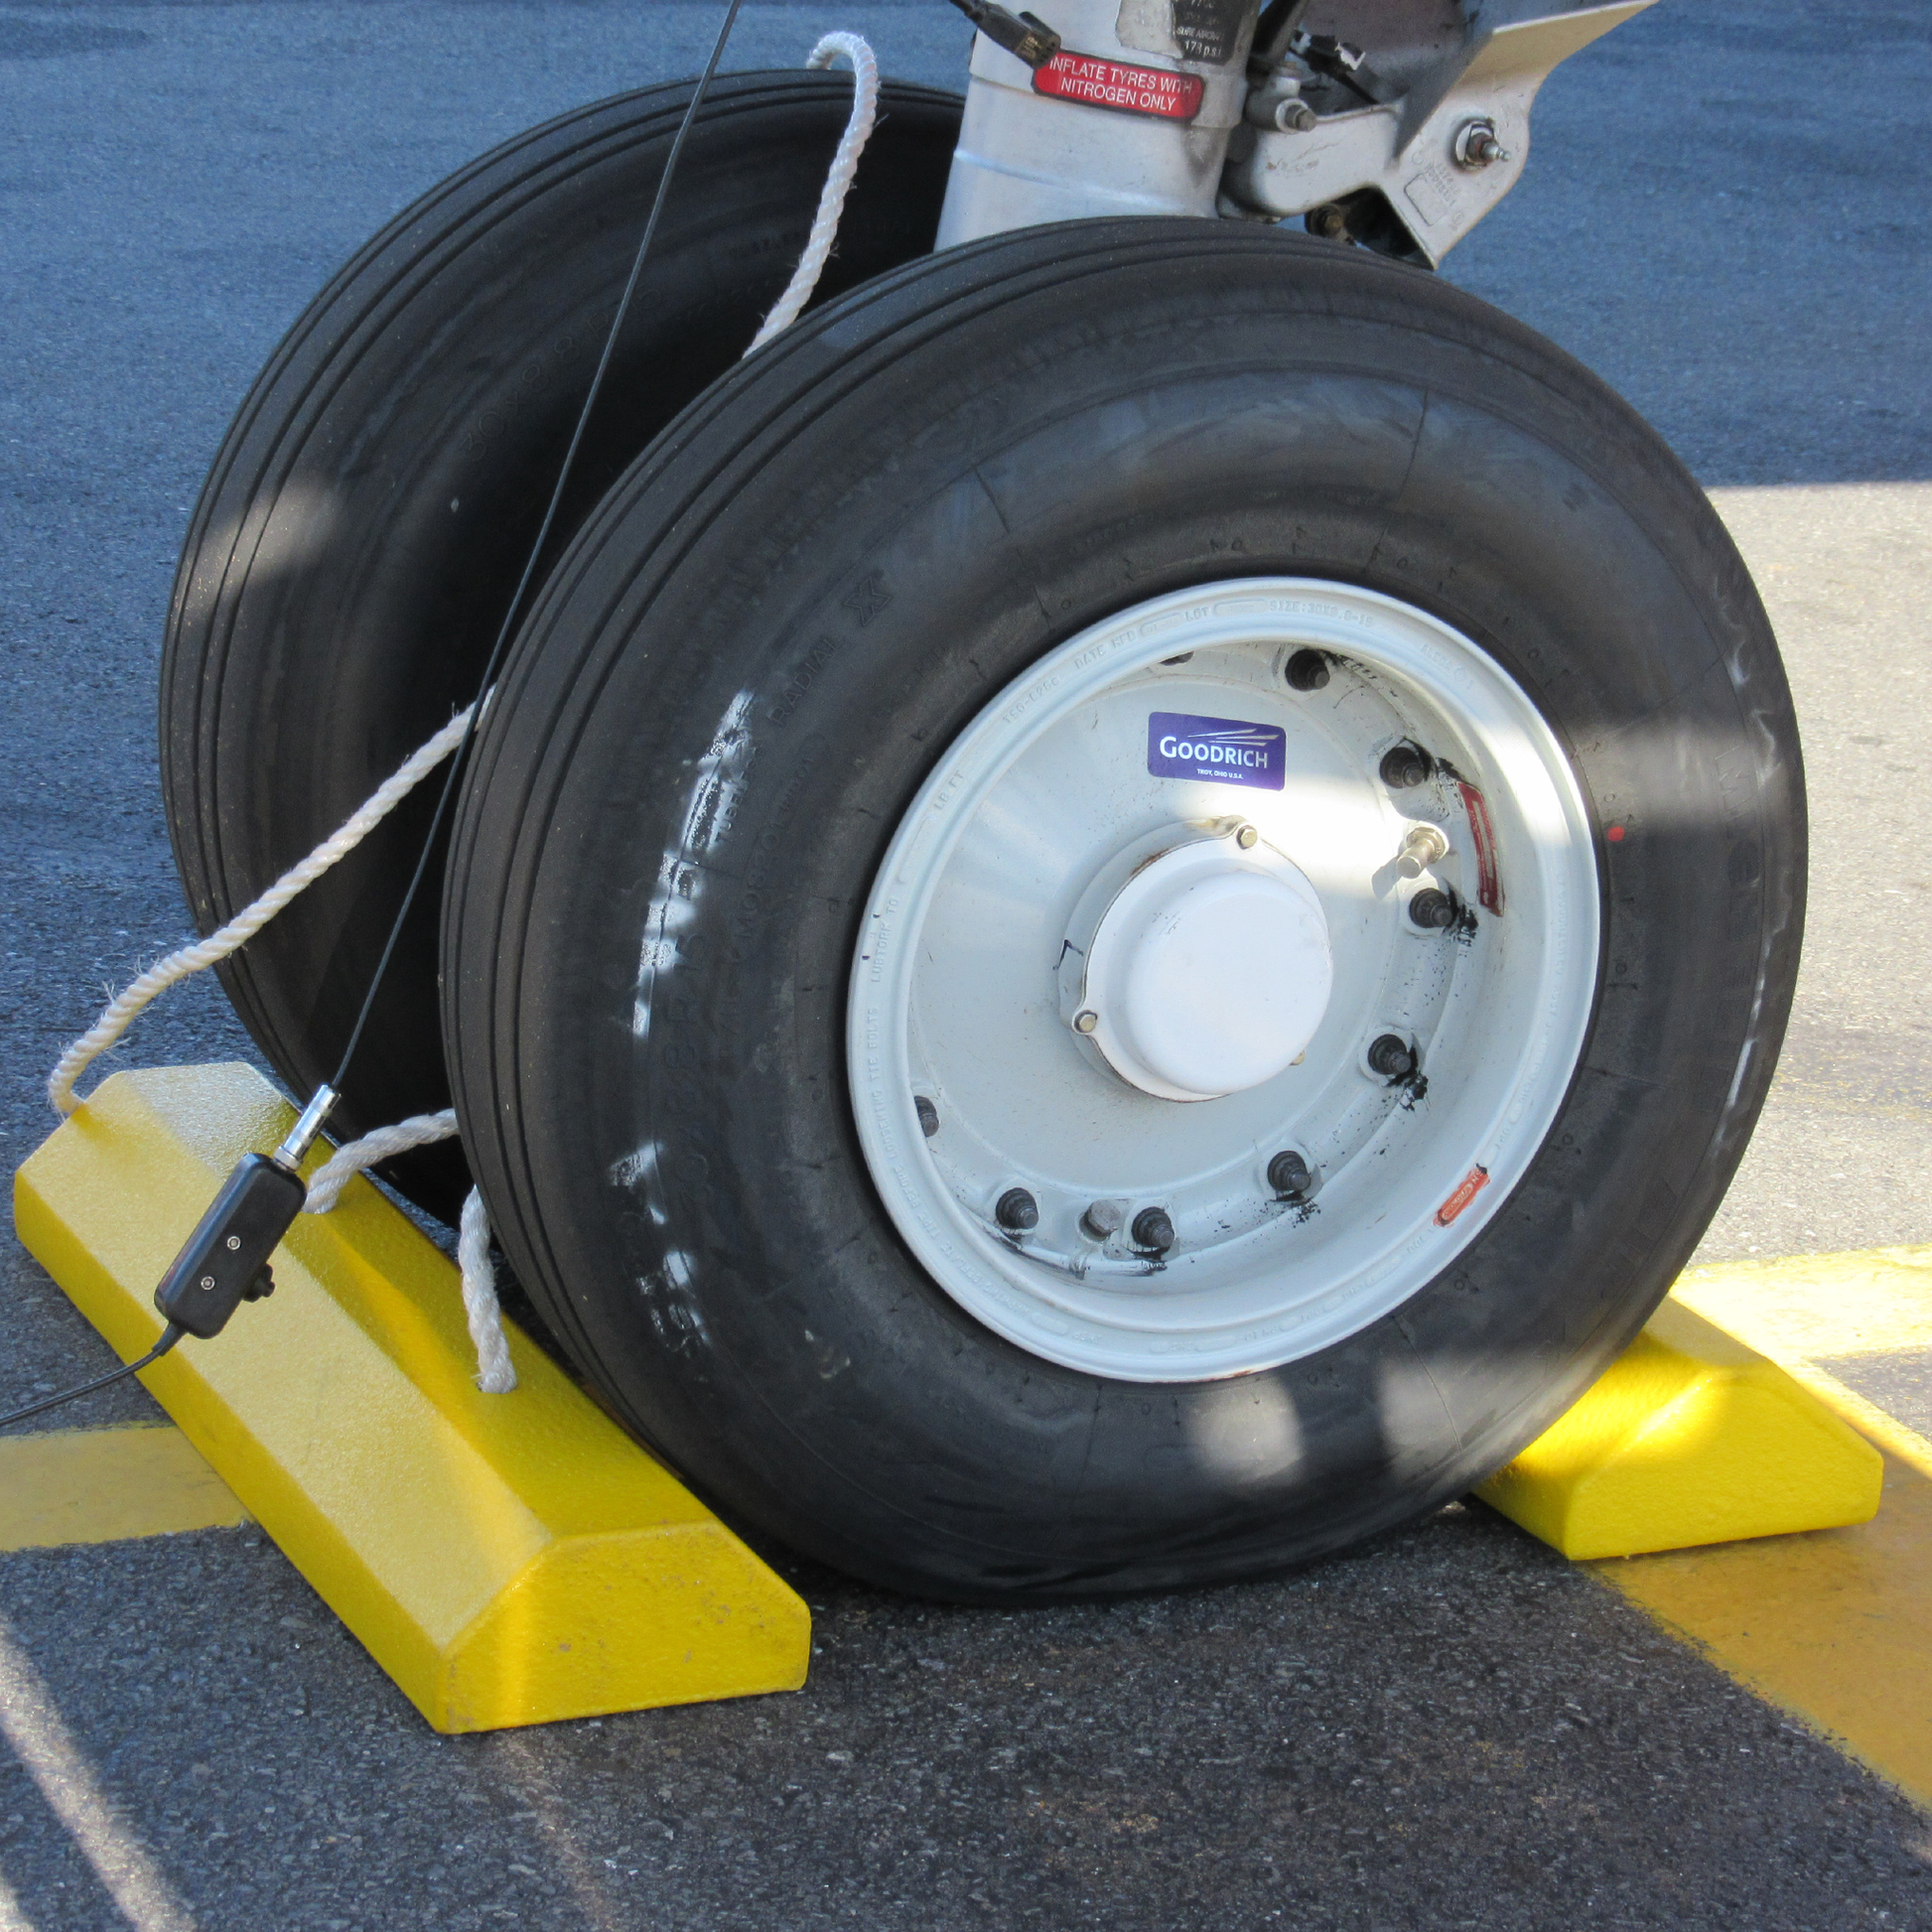 AeroChock™-20 in use on plane wheel